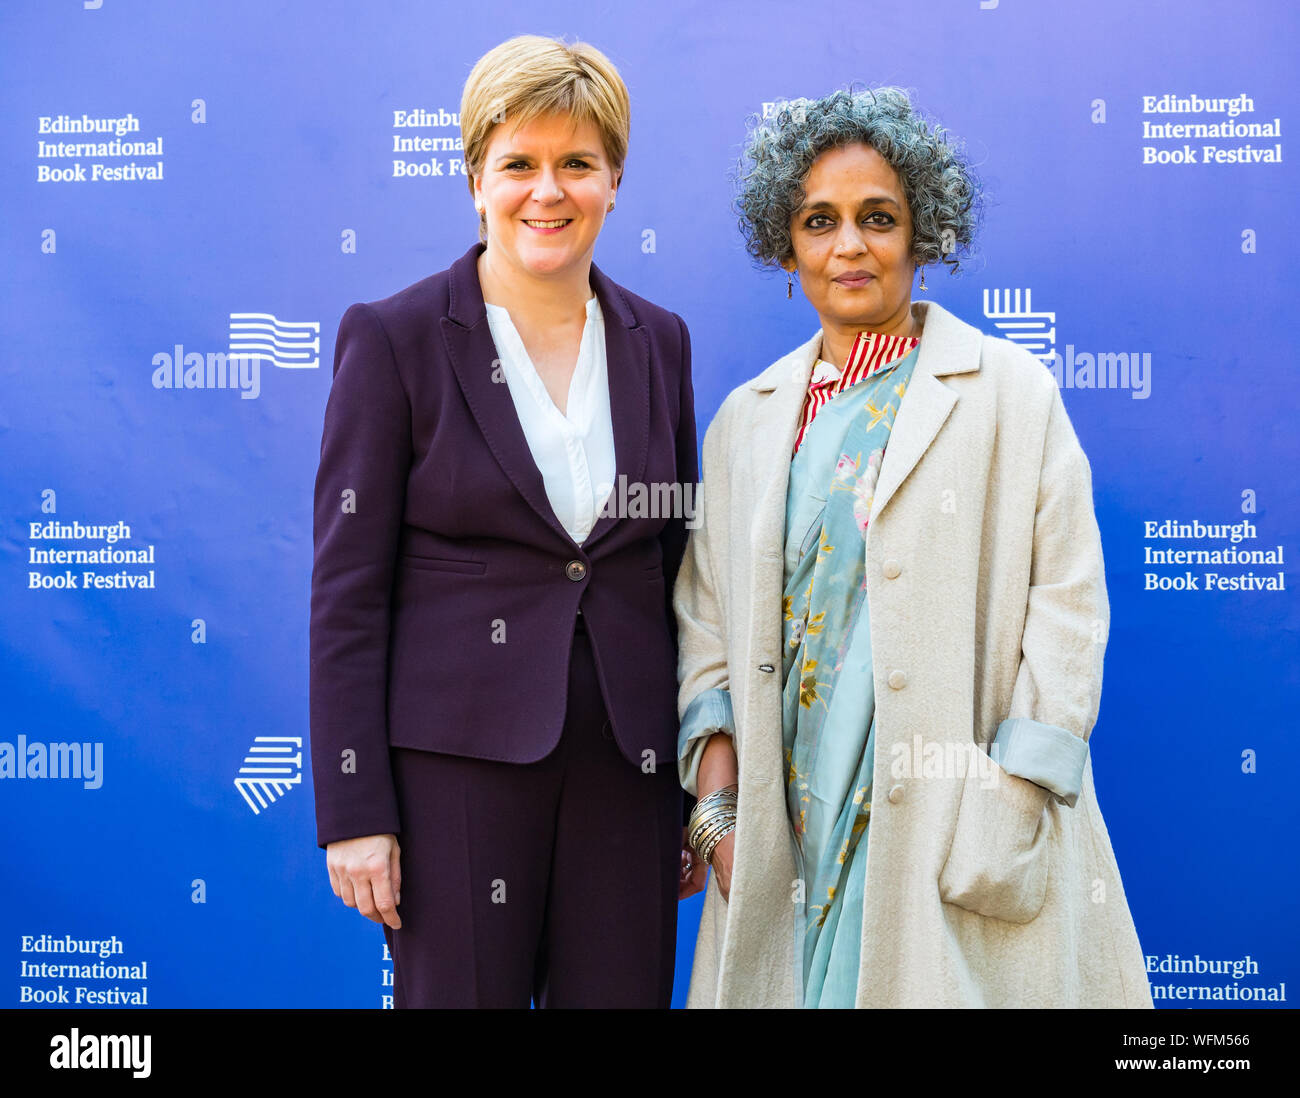 Nicola Sturgeon, Premier Ministre indien & auteur & Booker prize winner Arundhati Roy, Edinburgh International Book Festival 2019, Écosse, Royaume-Uni Banque D'Images